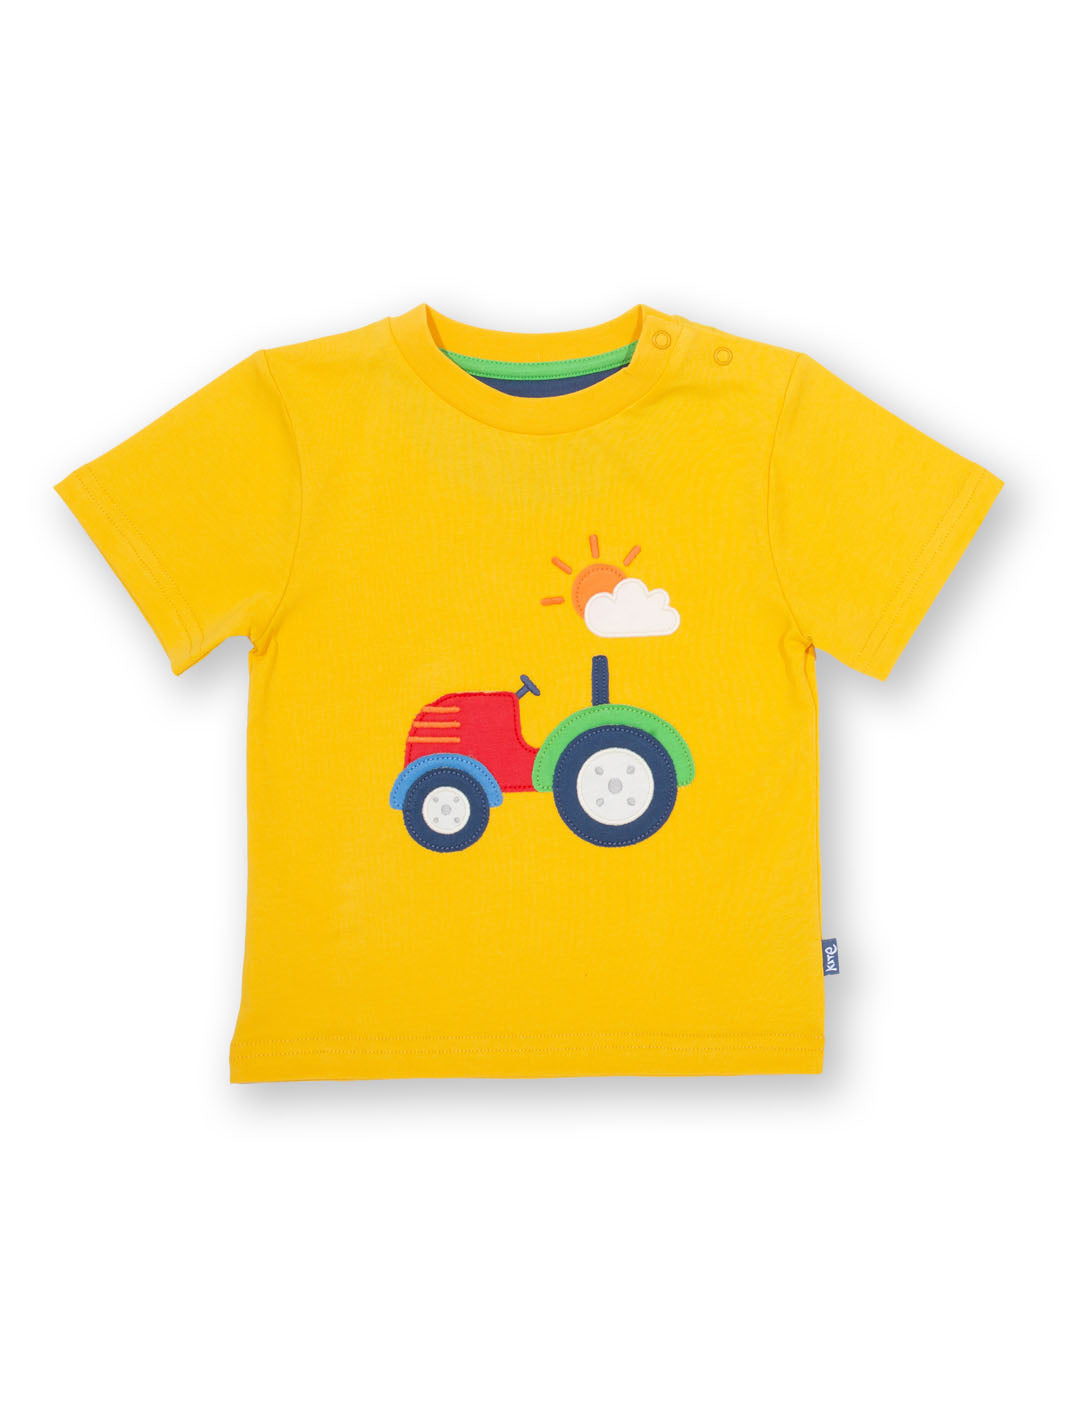 Kite Tractor Short Sleeve T-Shirt - Yellow